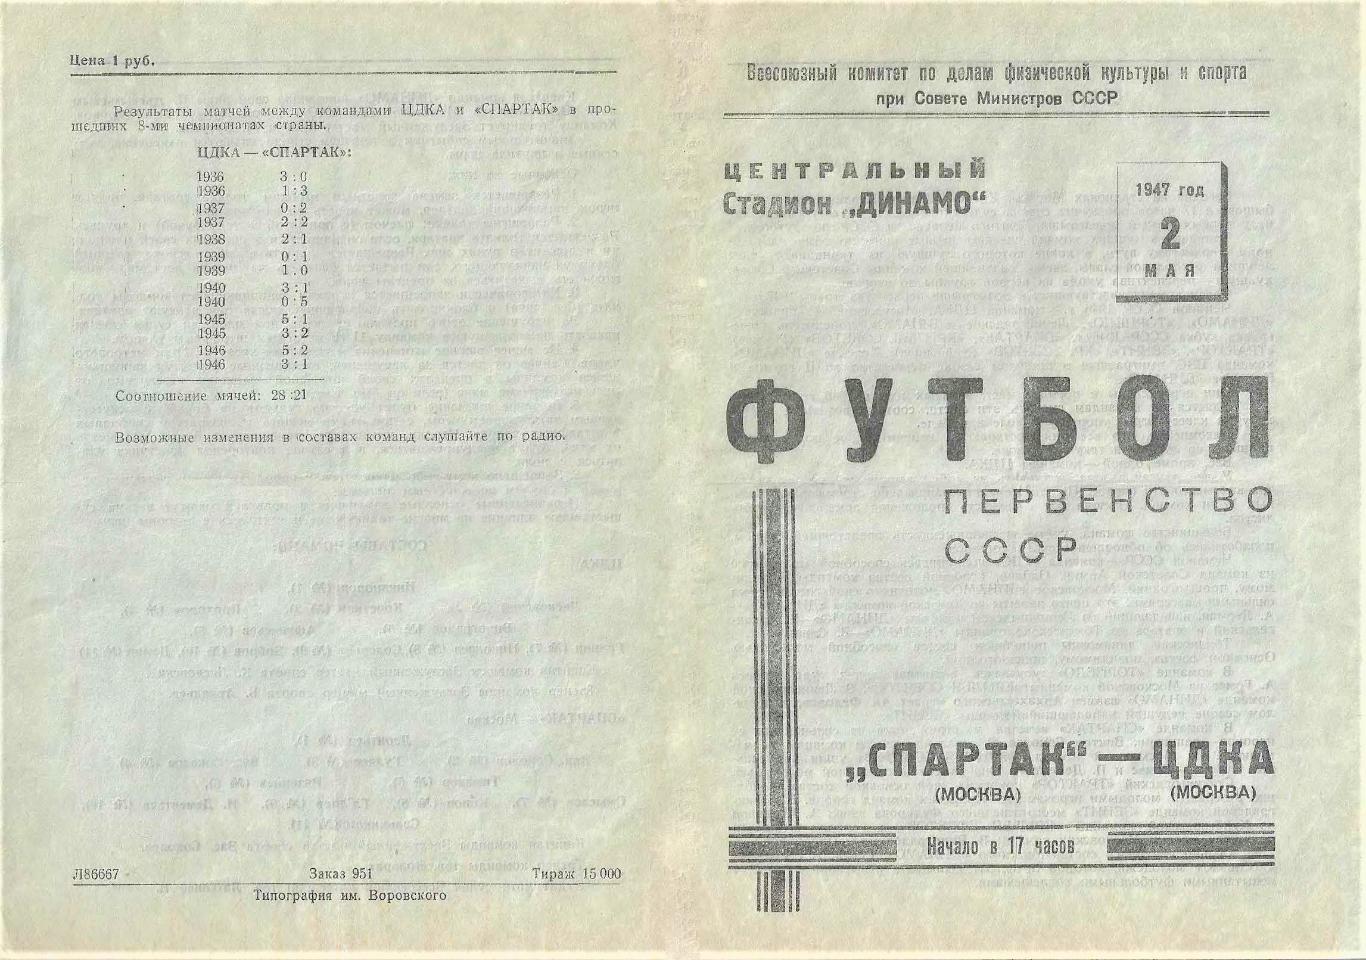 02.05.1947. ЦДКА (Москва) - Спартак (Москва) - копия